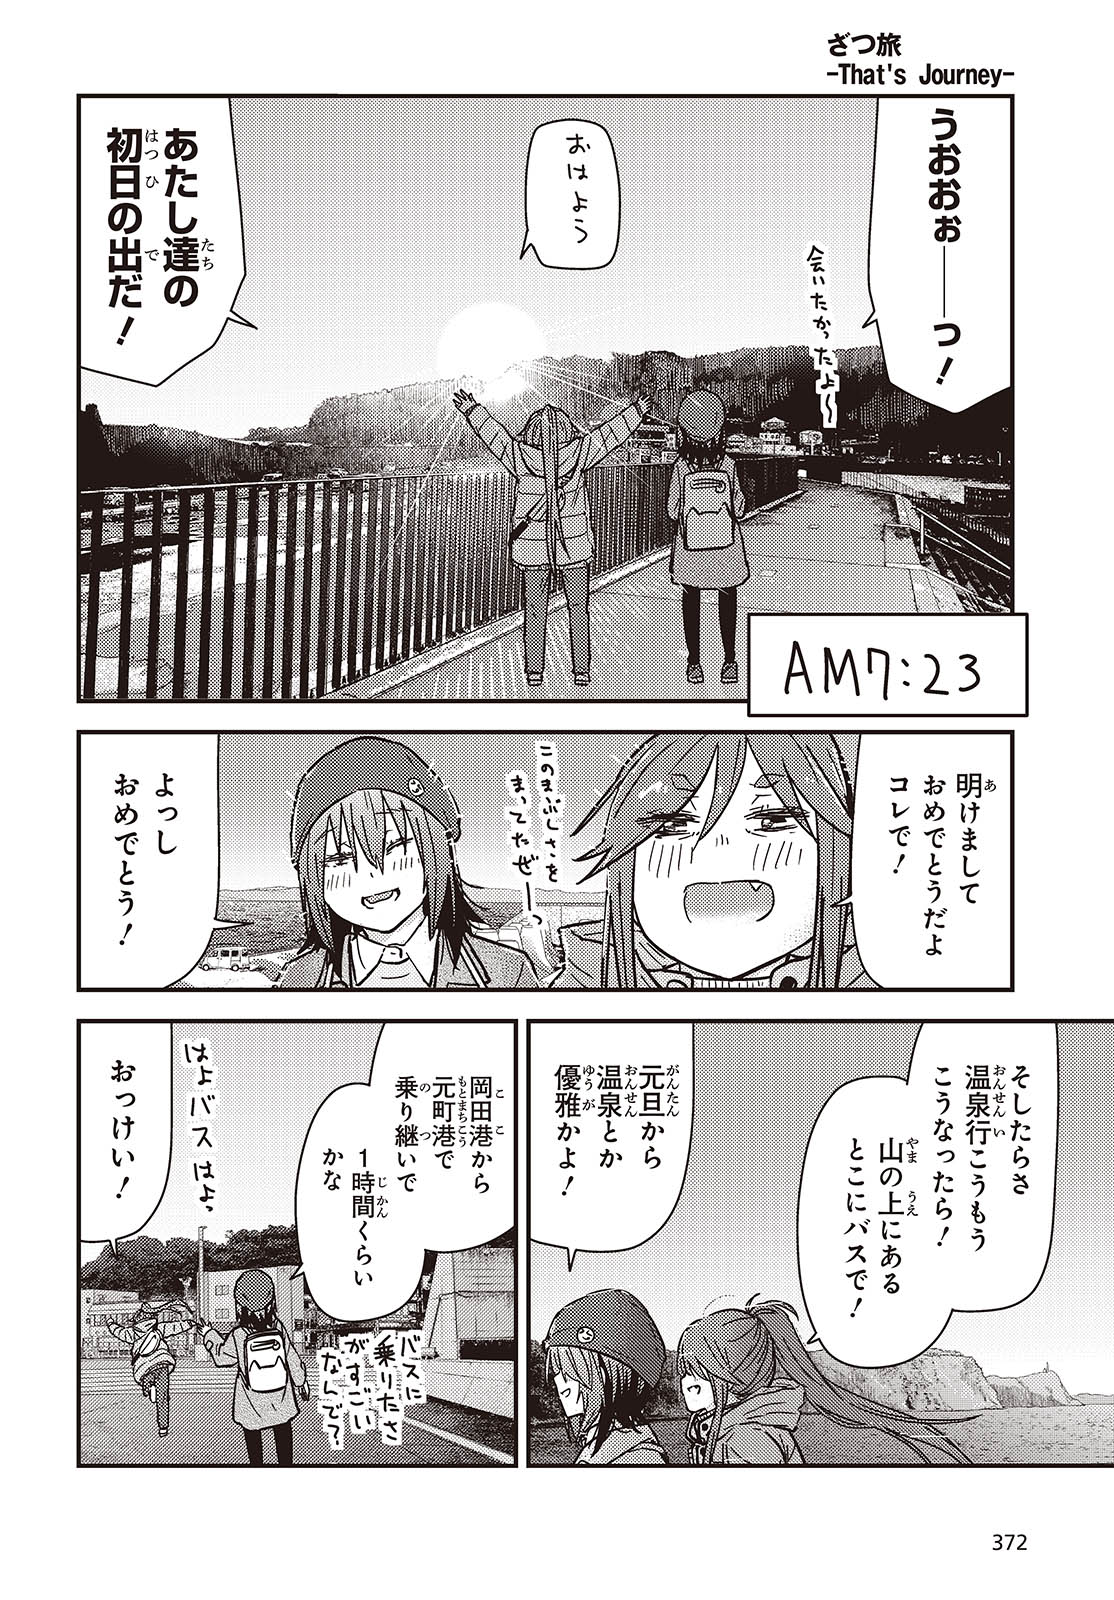 ざつ旅-That's Journey- 第37話 - Page 16